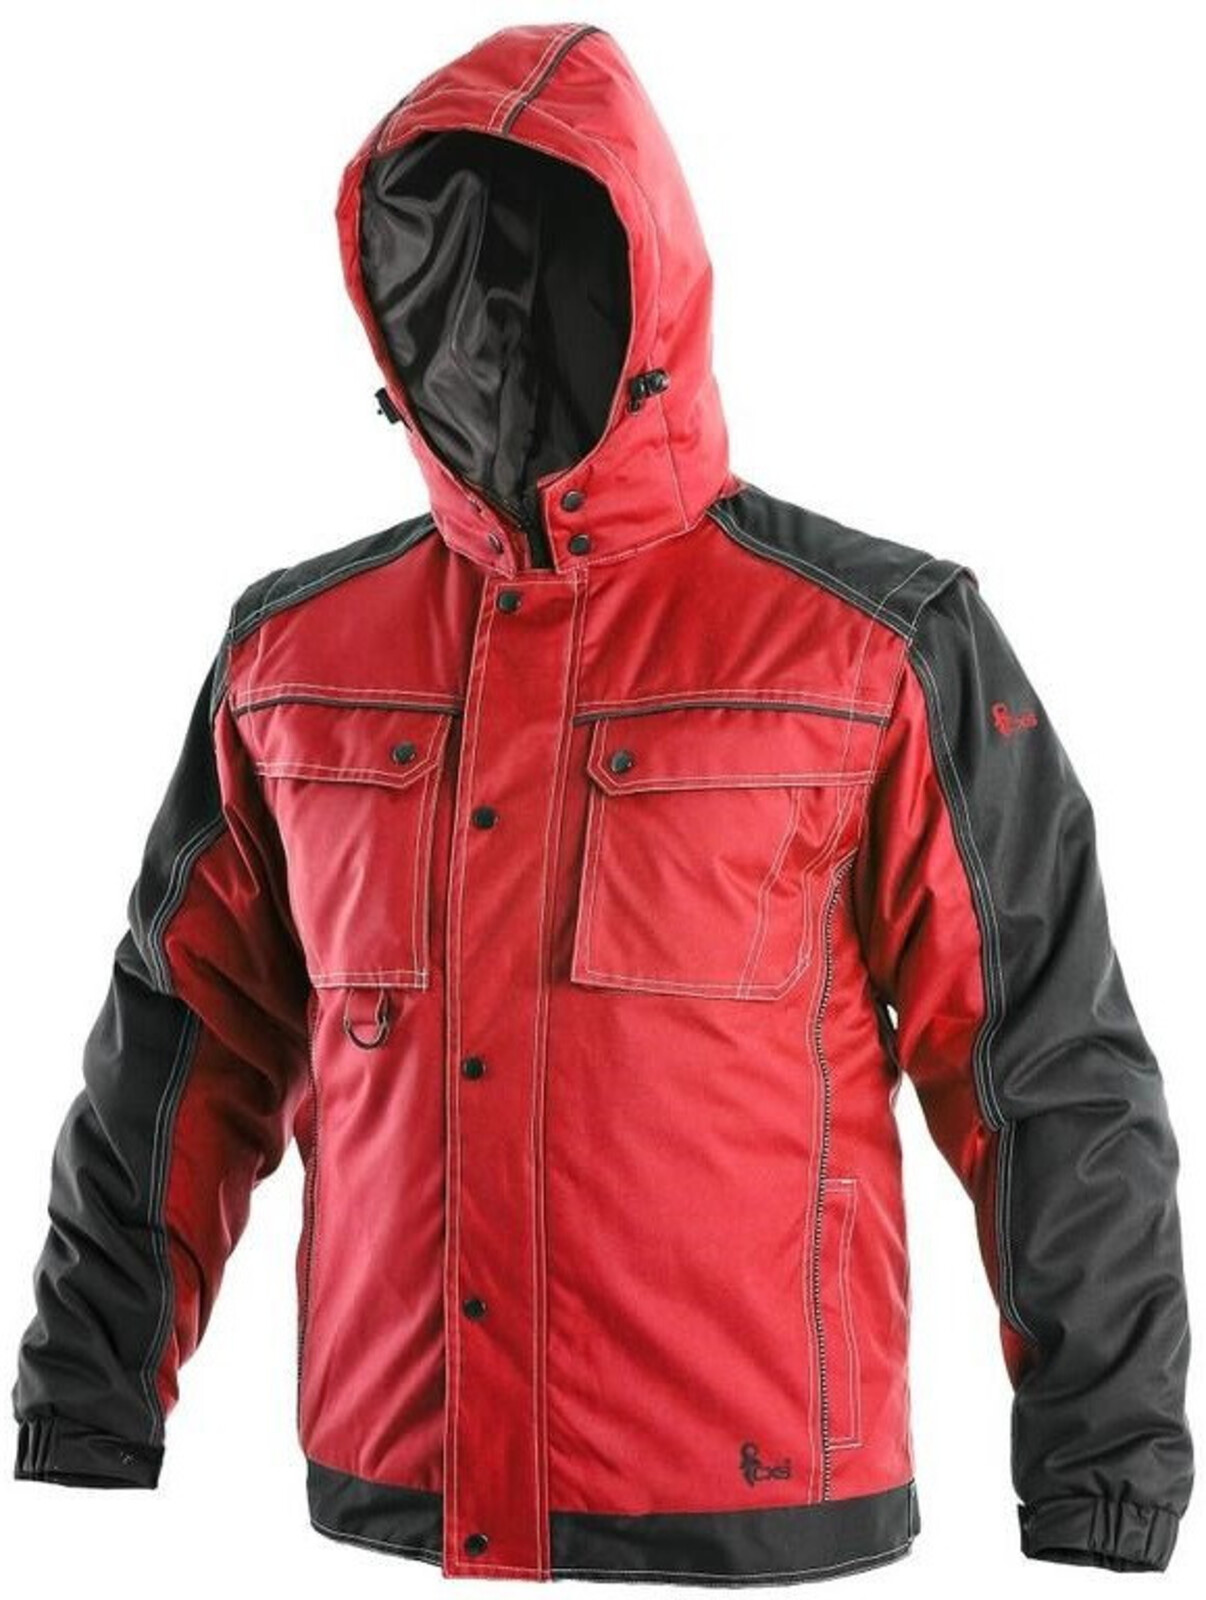 Pánska zimná bunda CXS Irvine 2v1 - veľkosť: XL, farba: červená/čierna